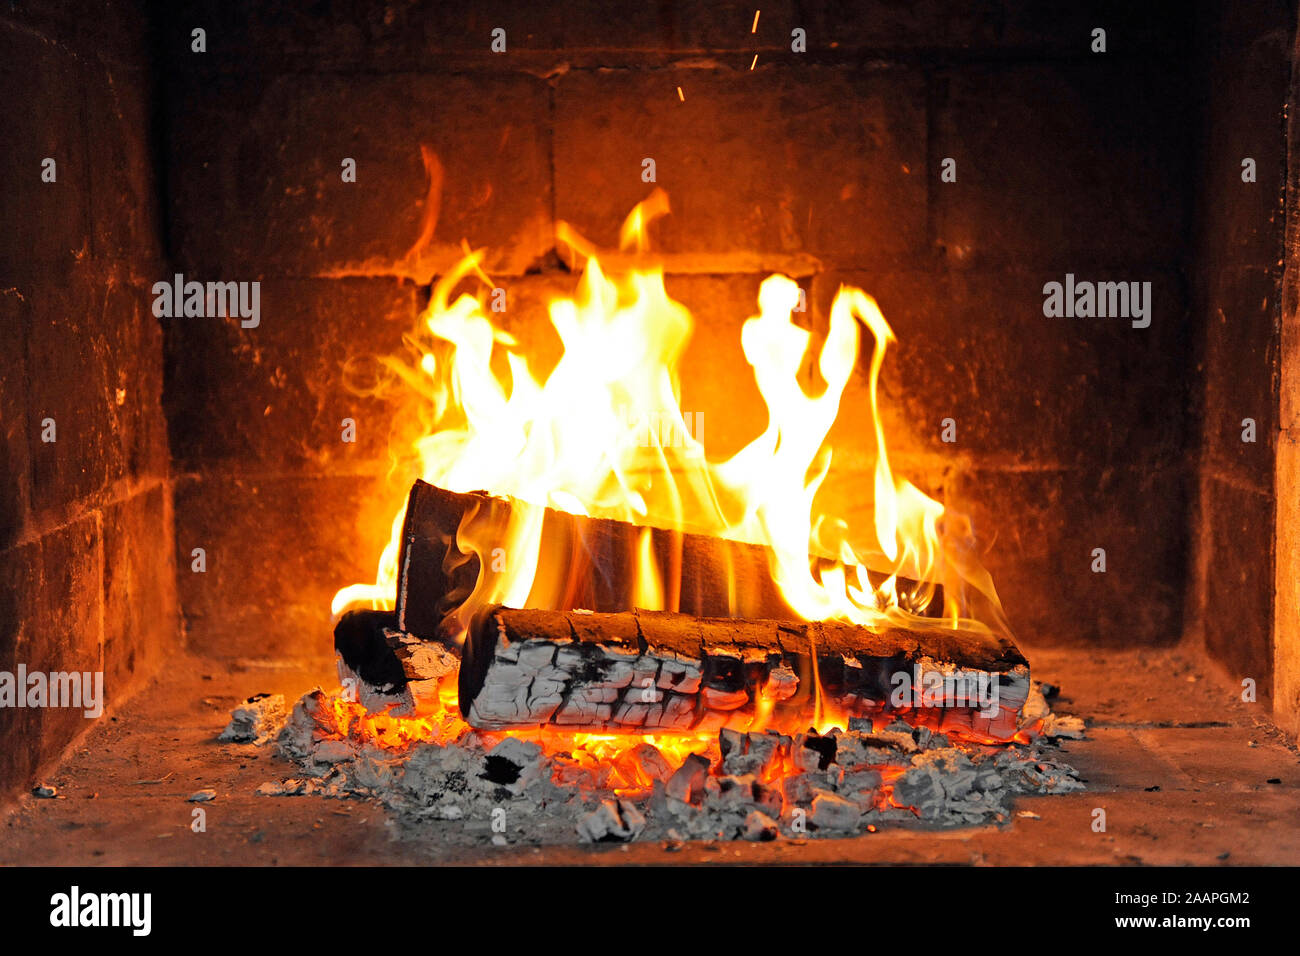 Holzfeuer in einem offenen Kamin Stock Photo